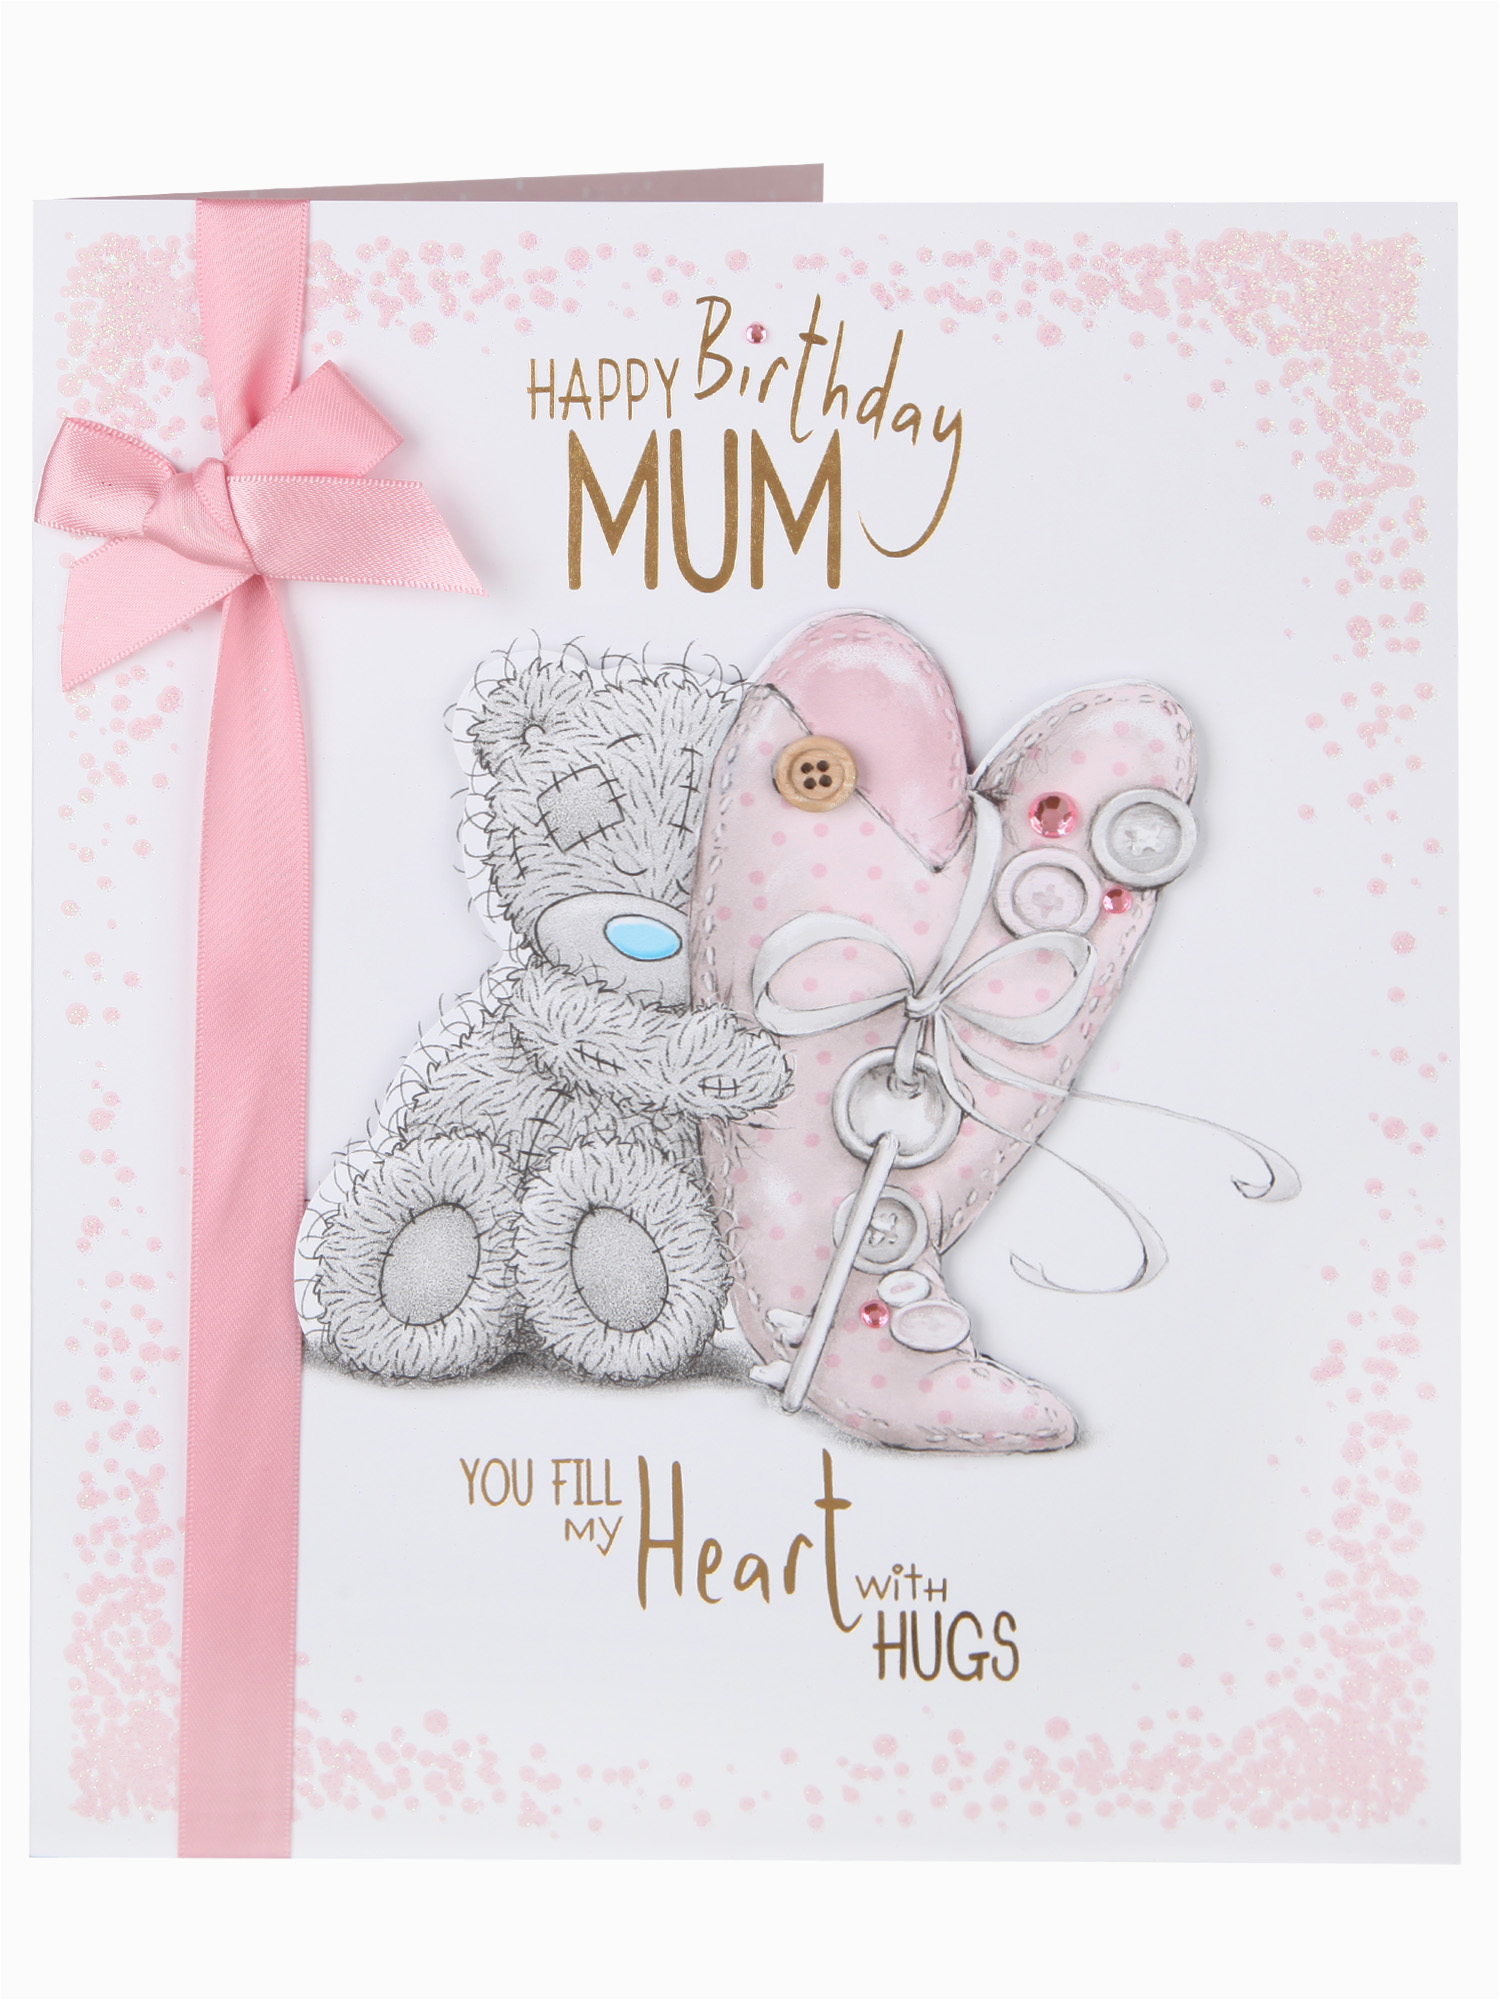 probably fantastic free mum birthday cards ideas chateau du